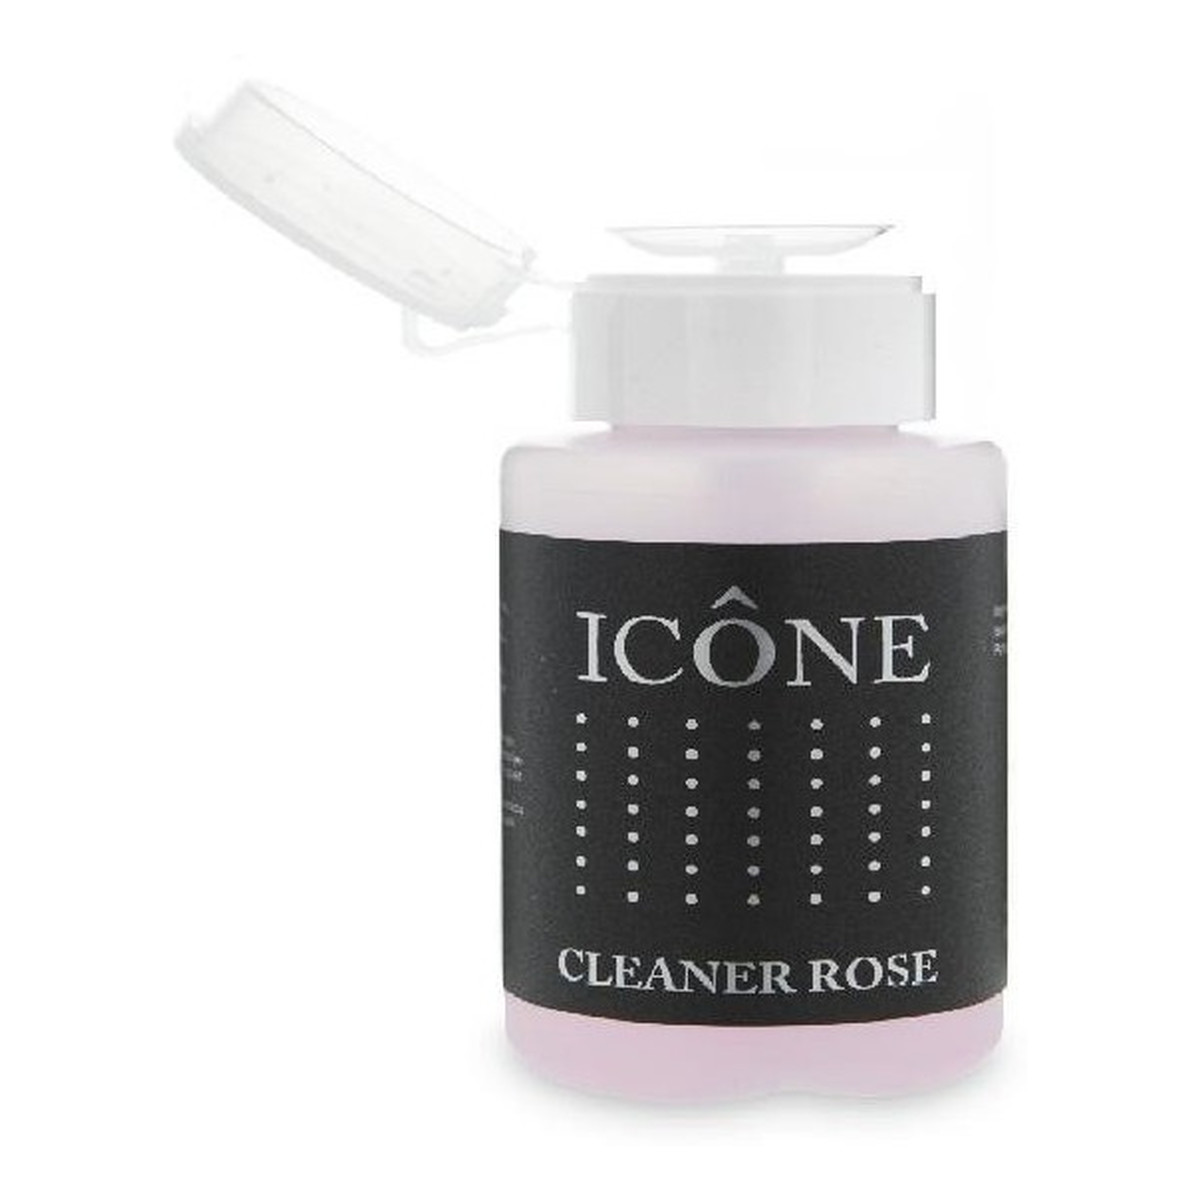 Icone Cleaner Rose odtłuszczacz do paznokci 150ml